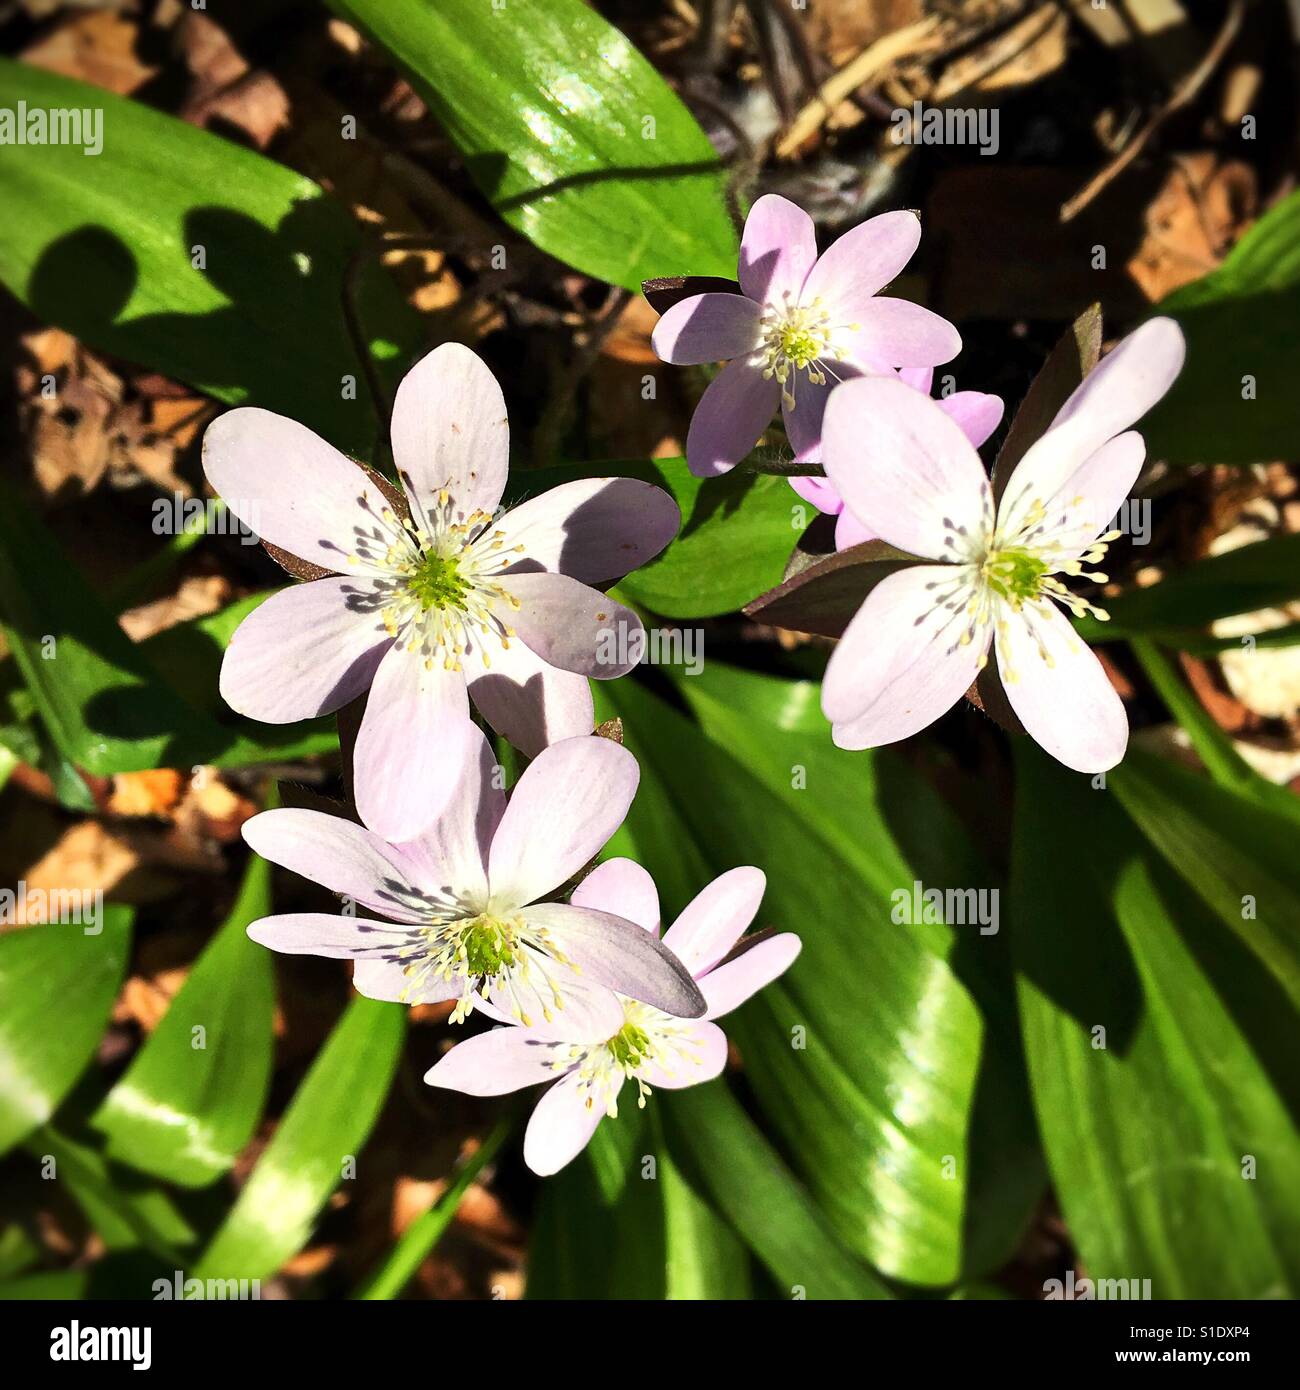 Rue anemone flowers. Stock Photo